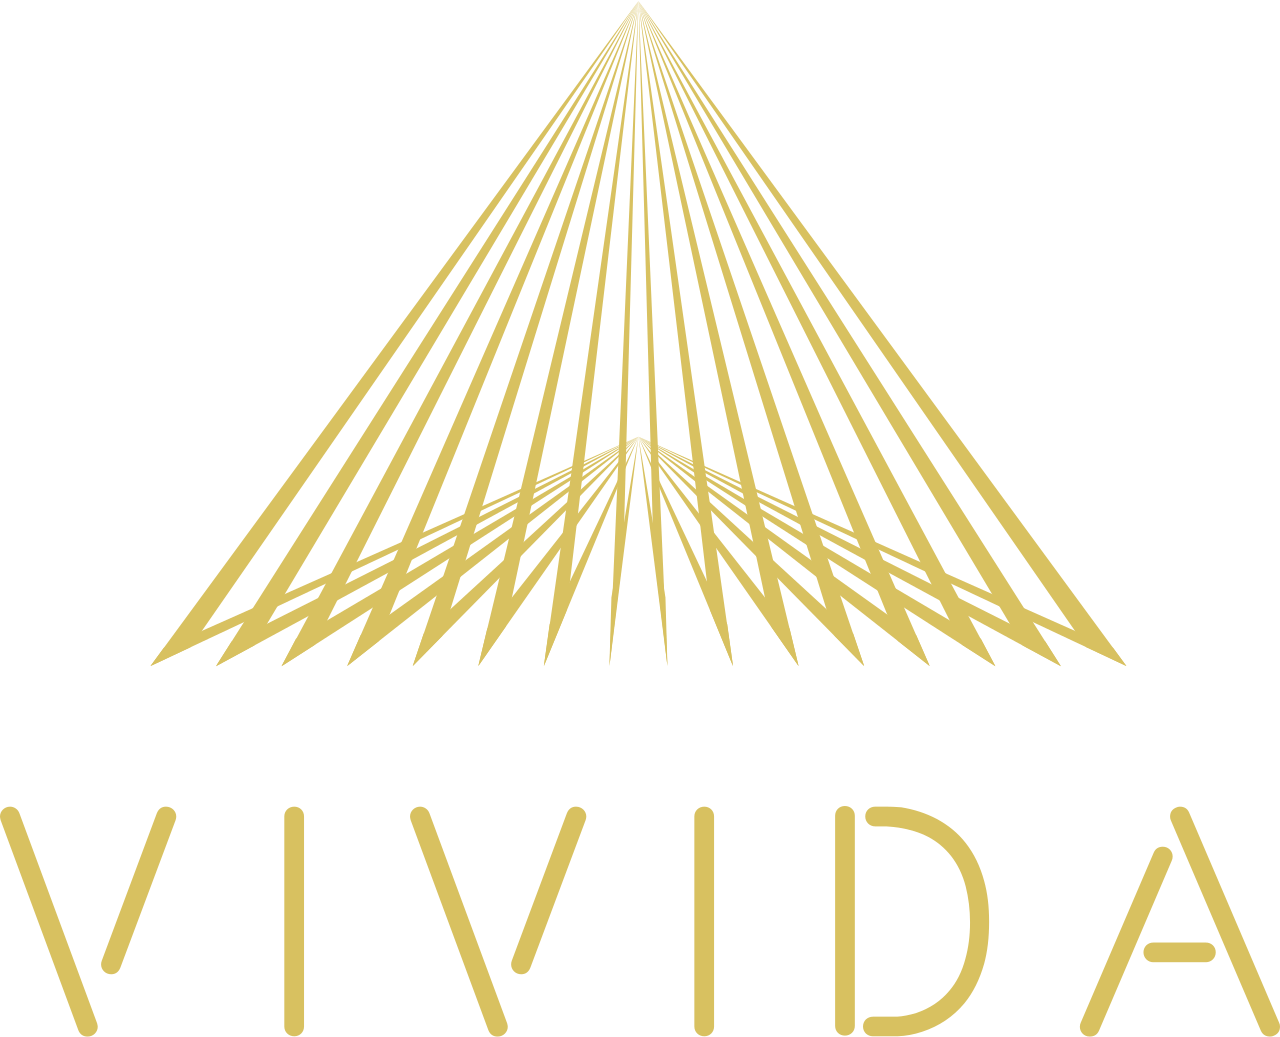 vivida's logo